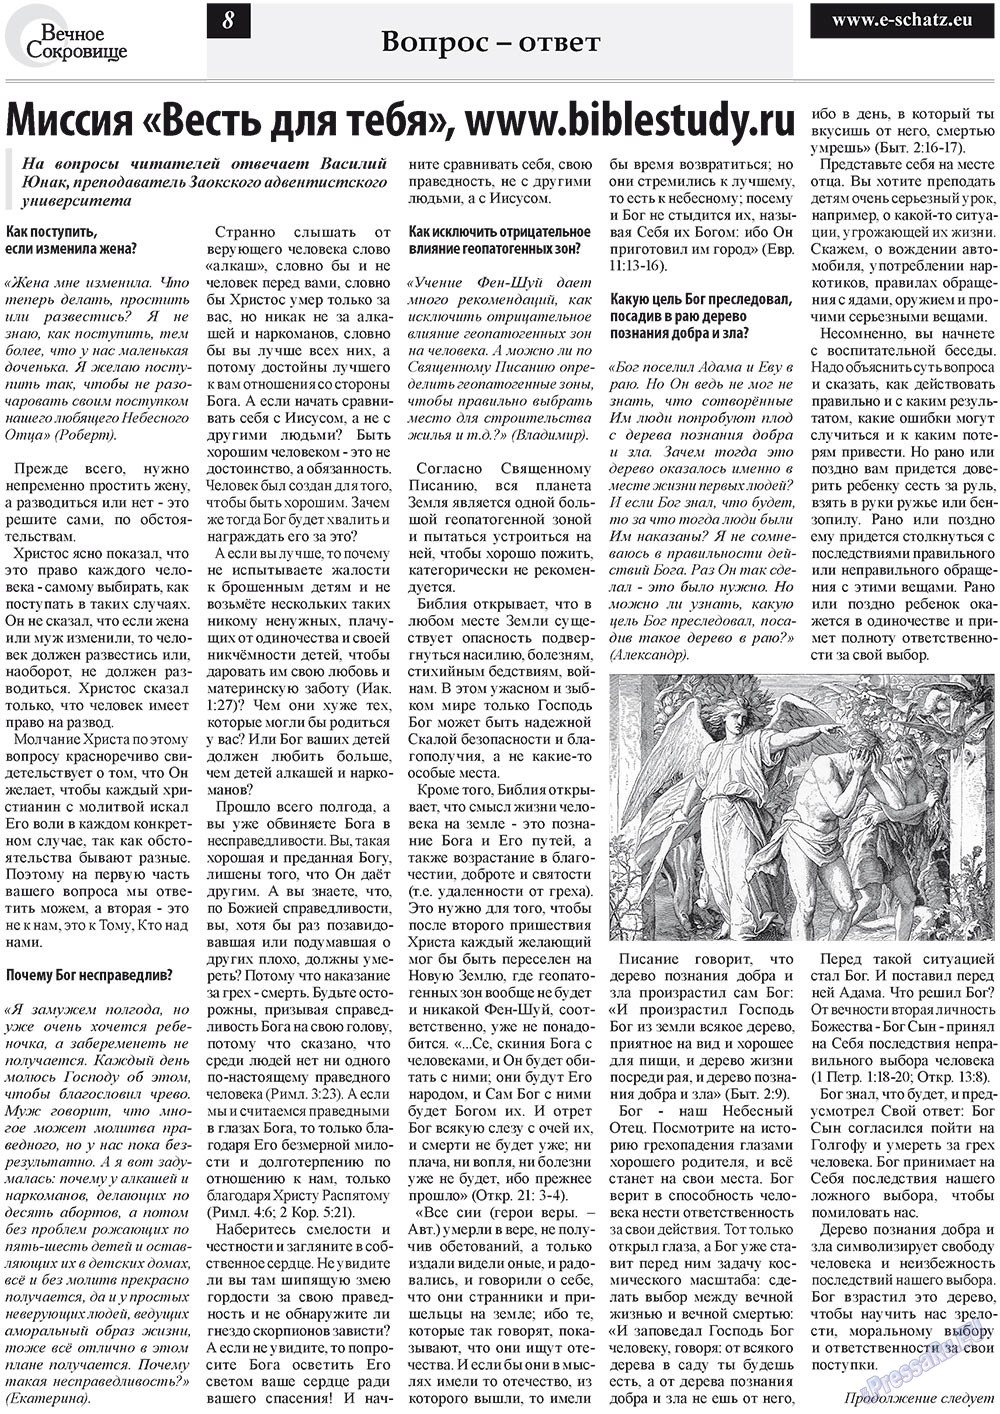 Вечное сокровище (газета). 2011 год, номер 3, стр. 8